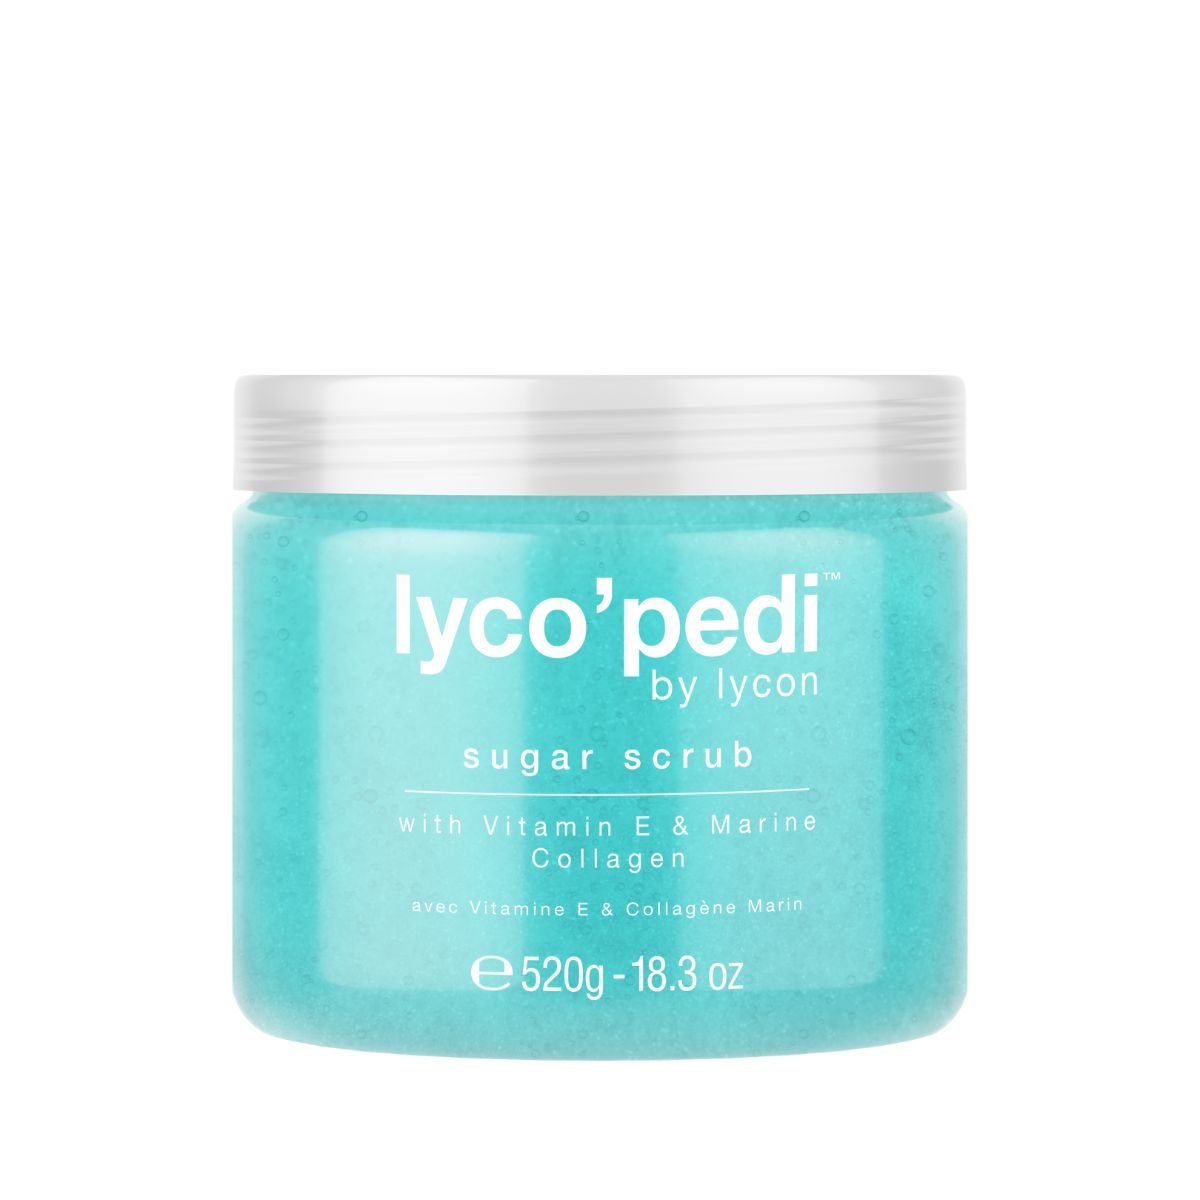 Lyco'Pedi Sugar Scrub - 520g - Retail